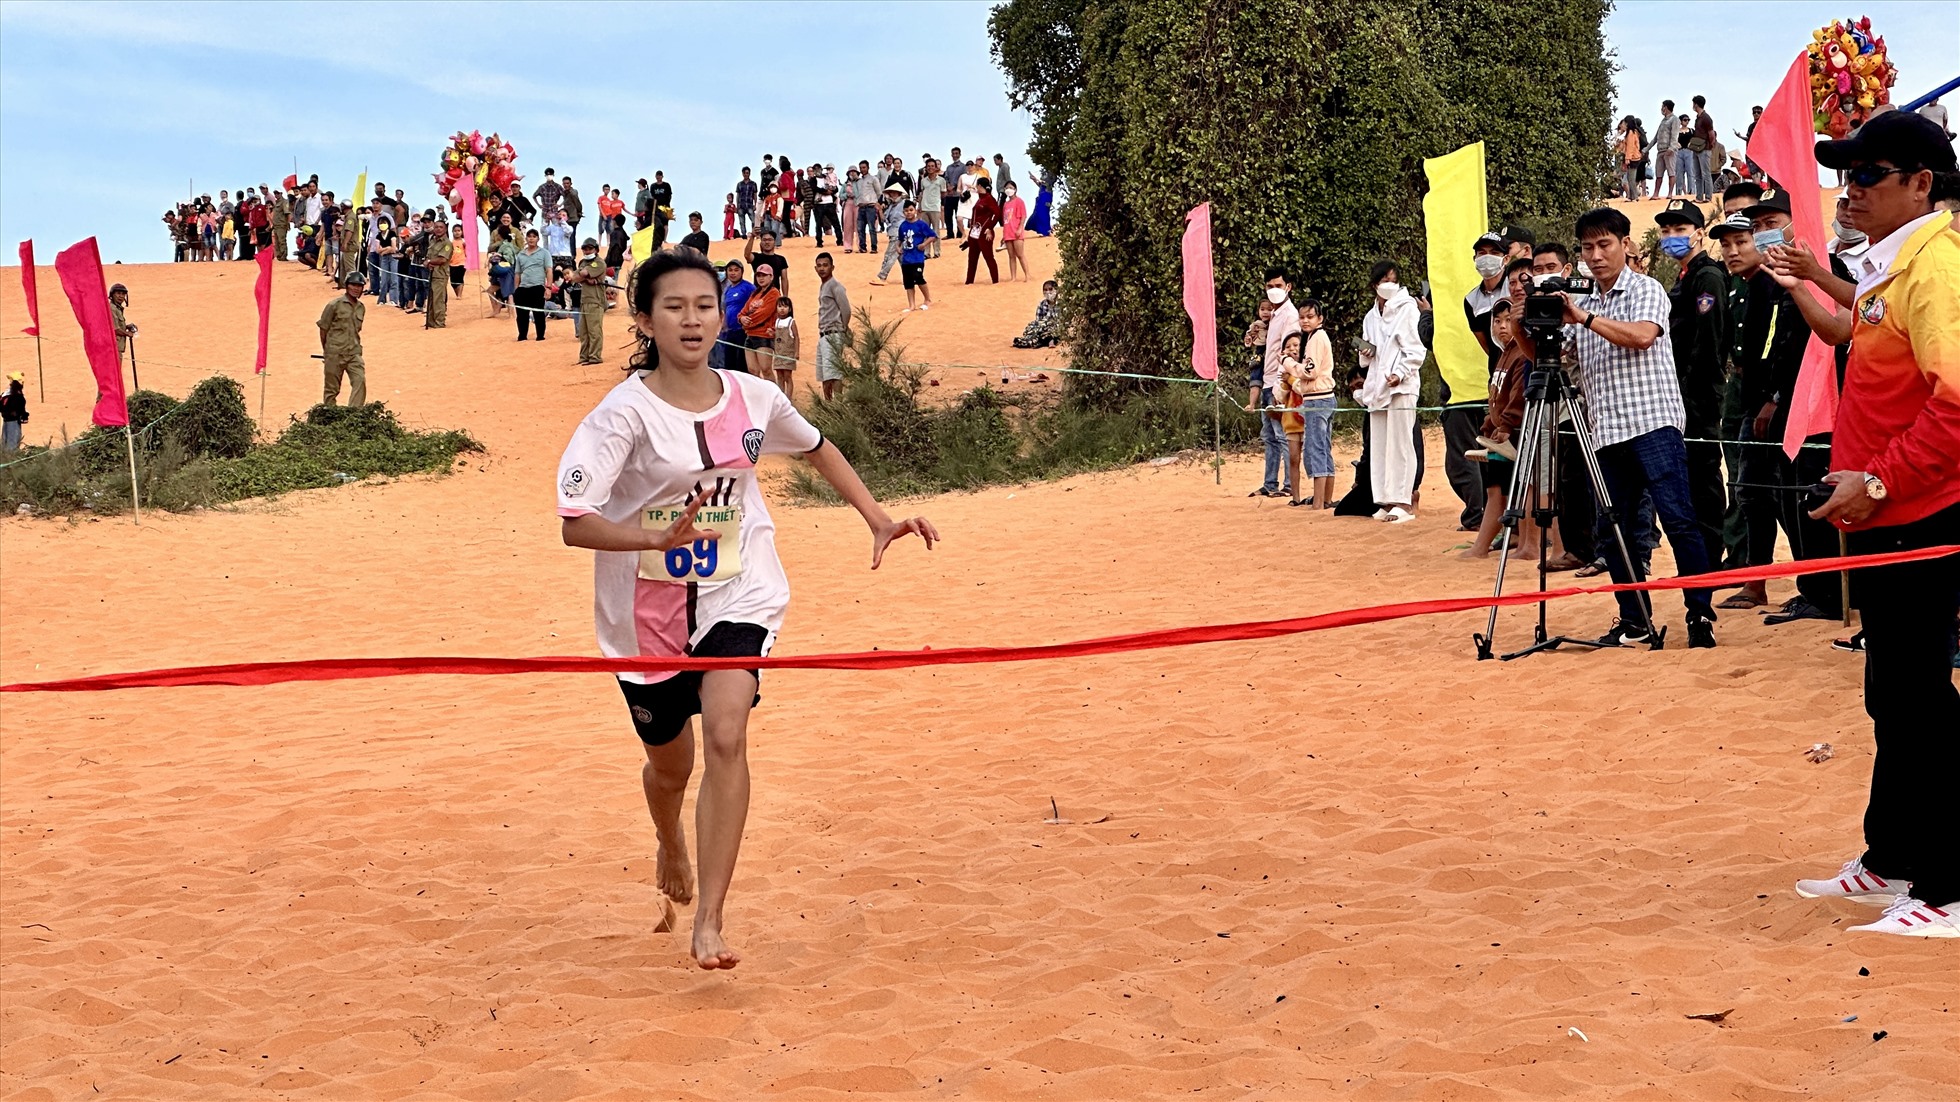 Chạy việt dã đòi hỏi sức bền, nhưng chạy trên cồn cát với cát lún tốn sức và khó khăn hơn nhưng các vận động viên muốn tham gia để vượt qua giới hạn của mình.